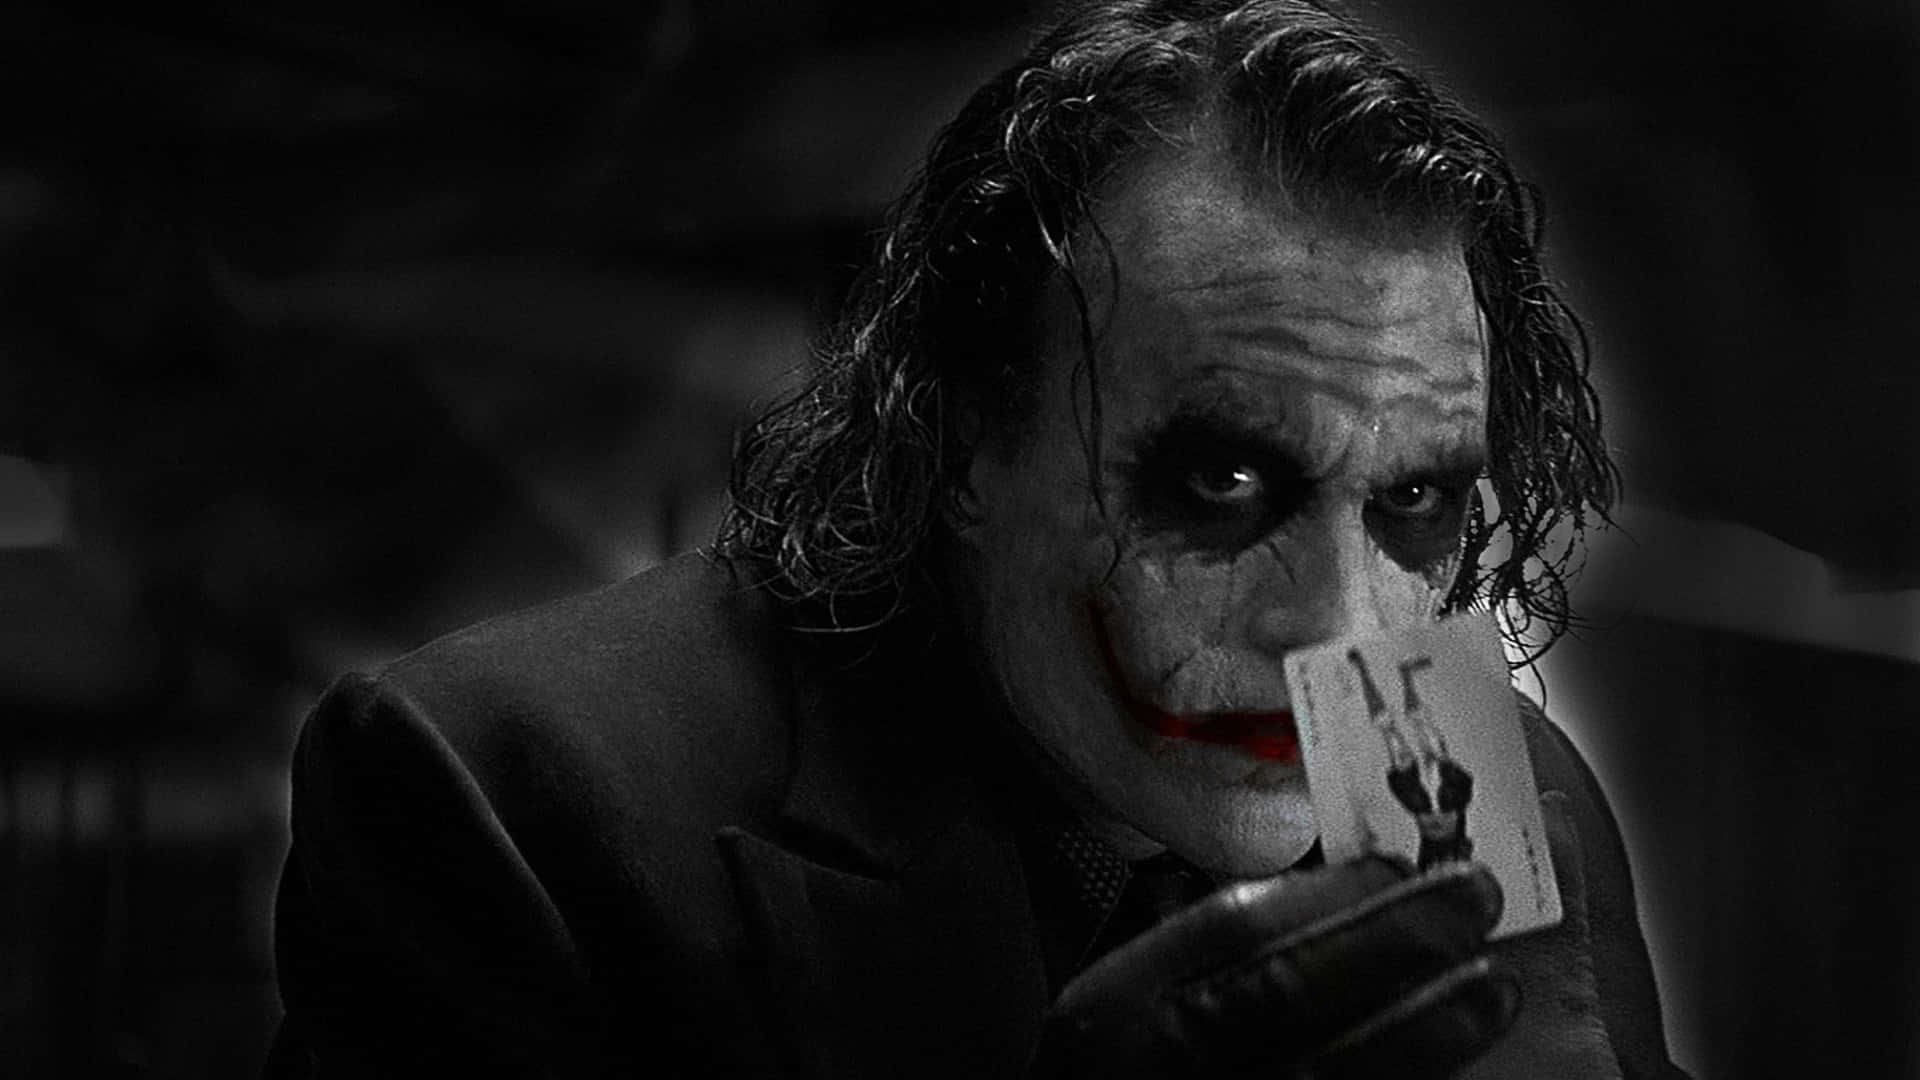 Sort Knight Joker i 4k Ultra HD sort og hvid plakat Wallpaper